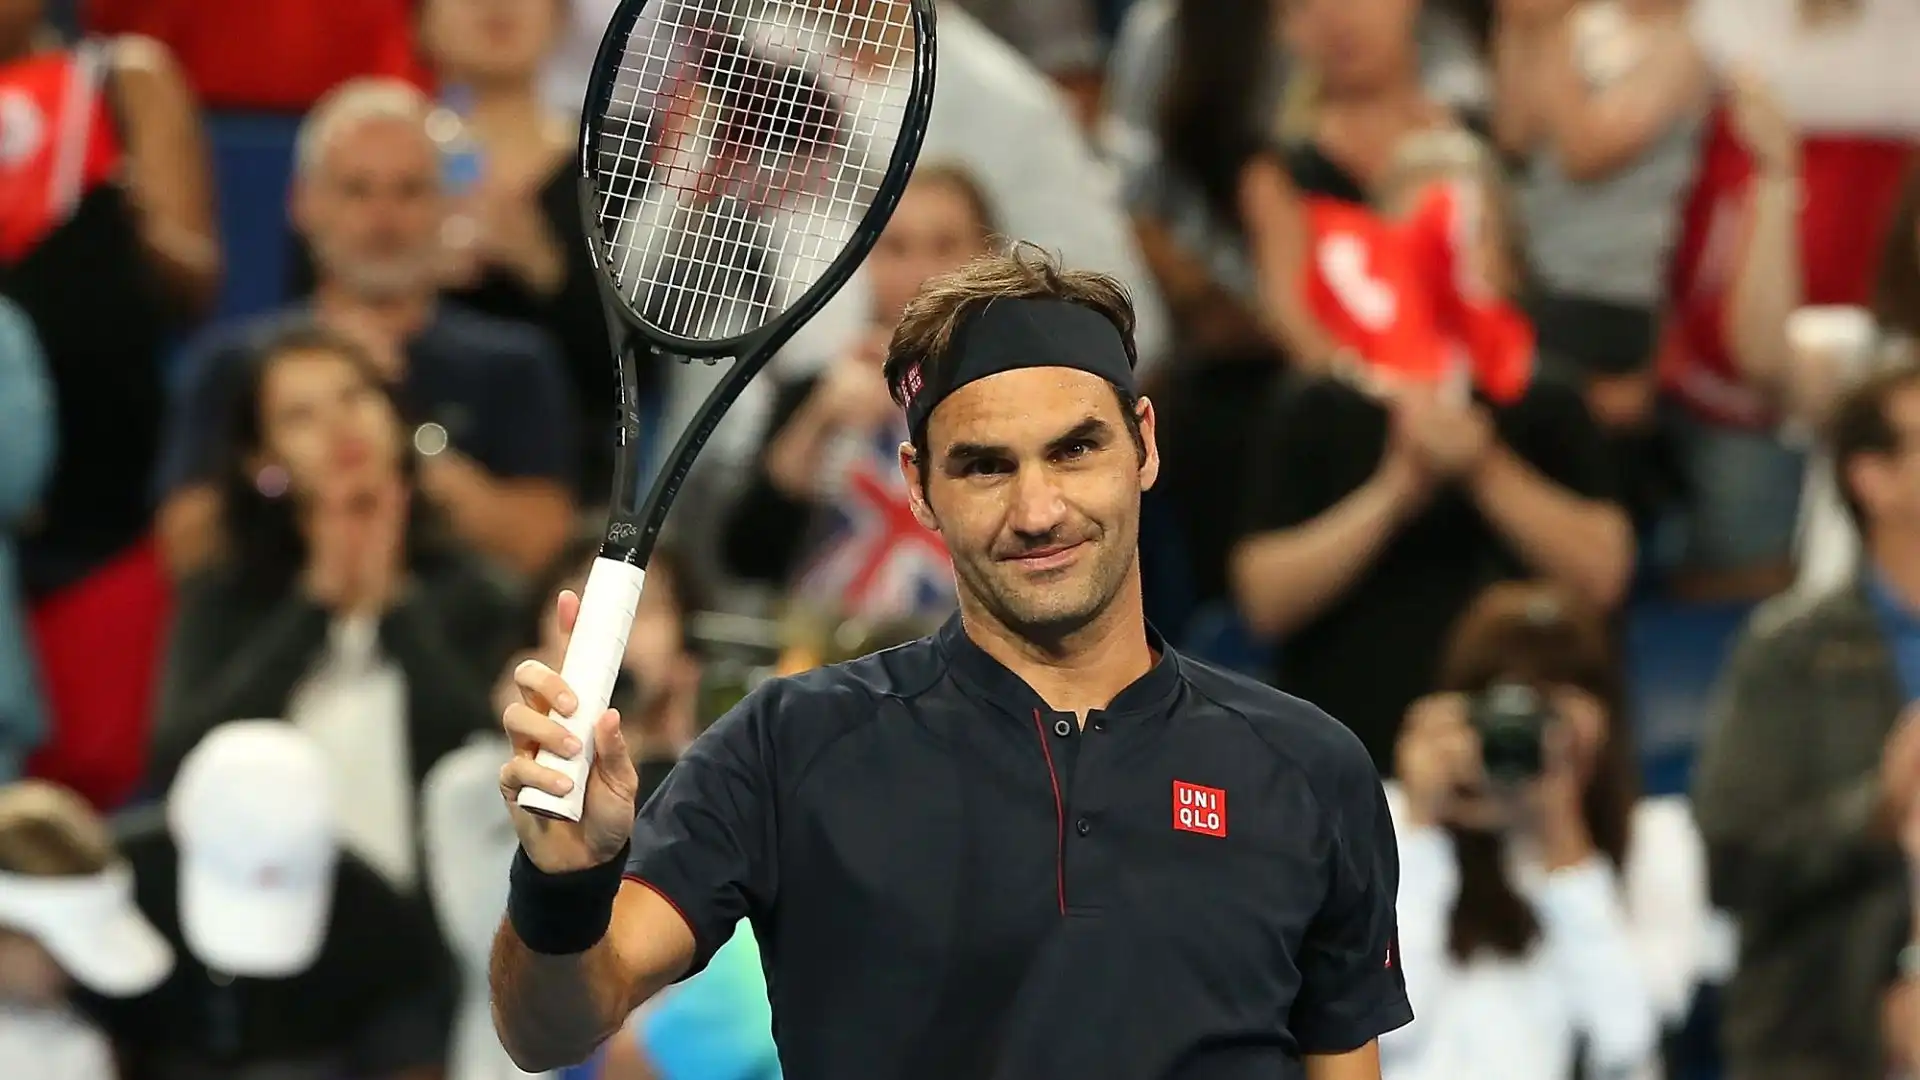 Roger Federer (Svizzera): patrimonio complessivo 550 milioni di dollari. Ha vinto 20 Slam in carriera e 103 tornei Atp in totale, è stato per 310 settimane numero uno del mondo